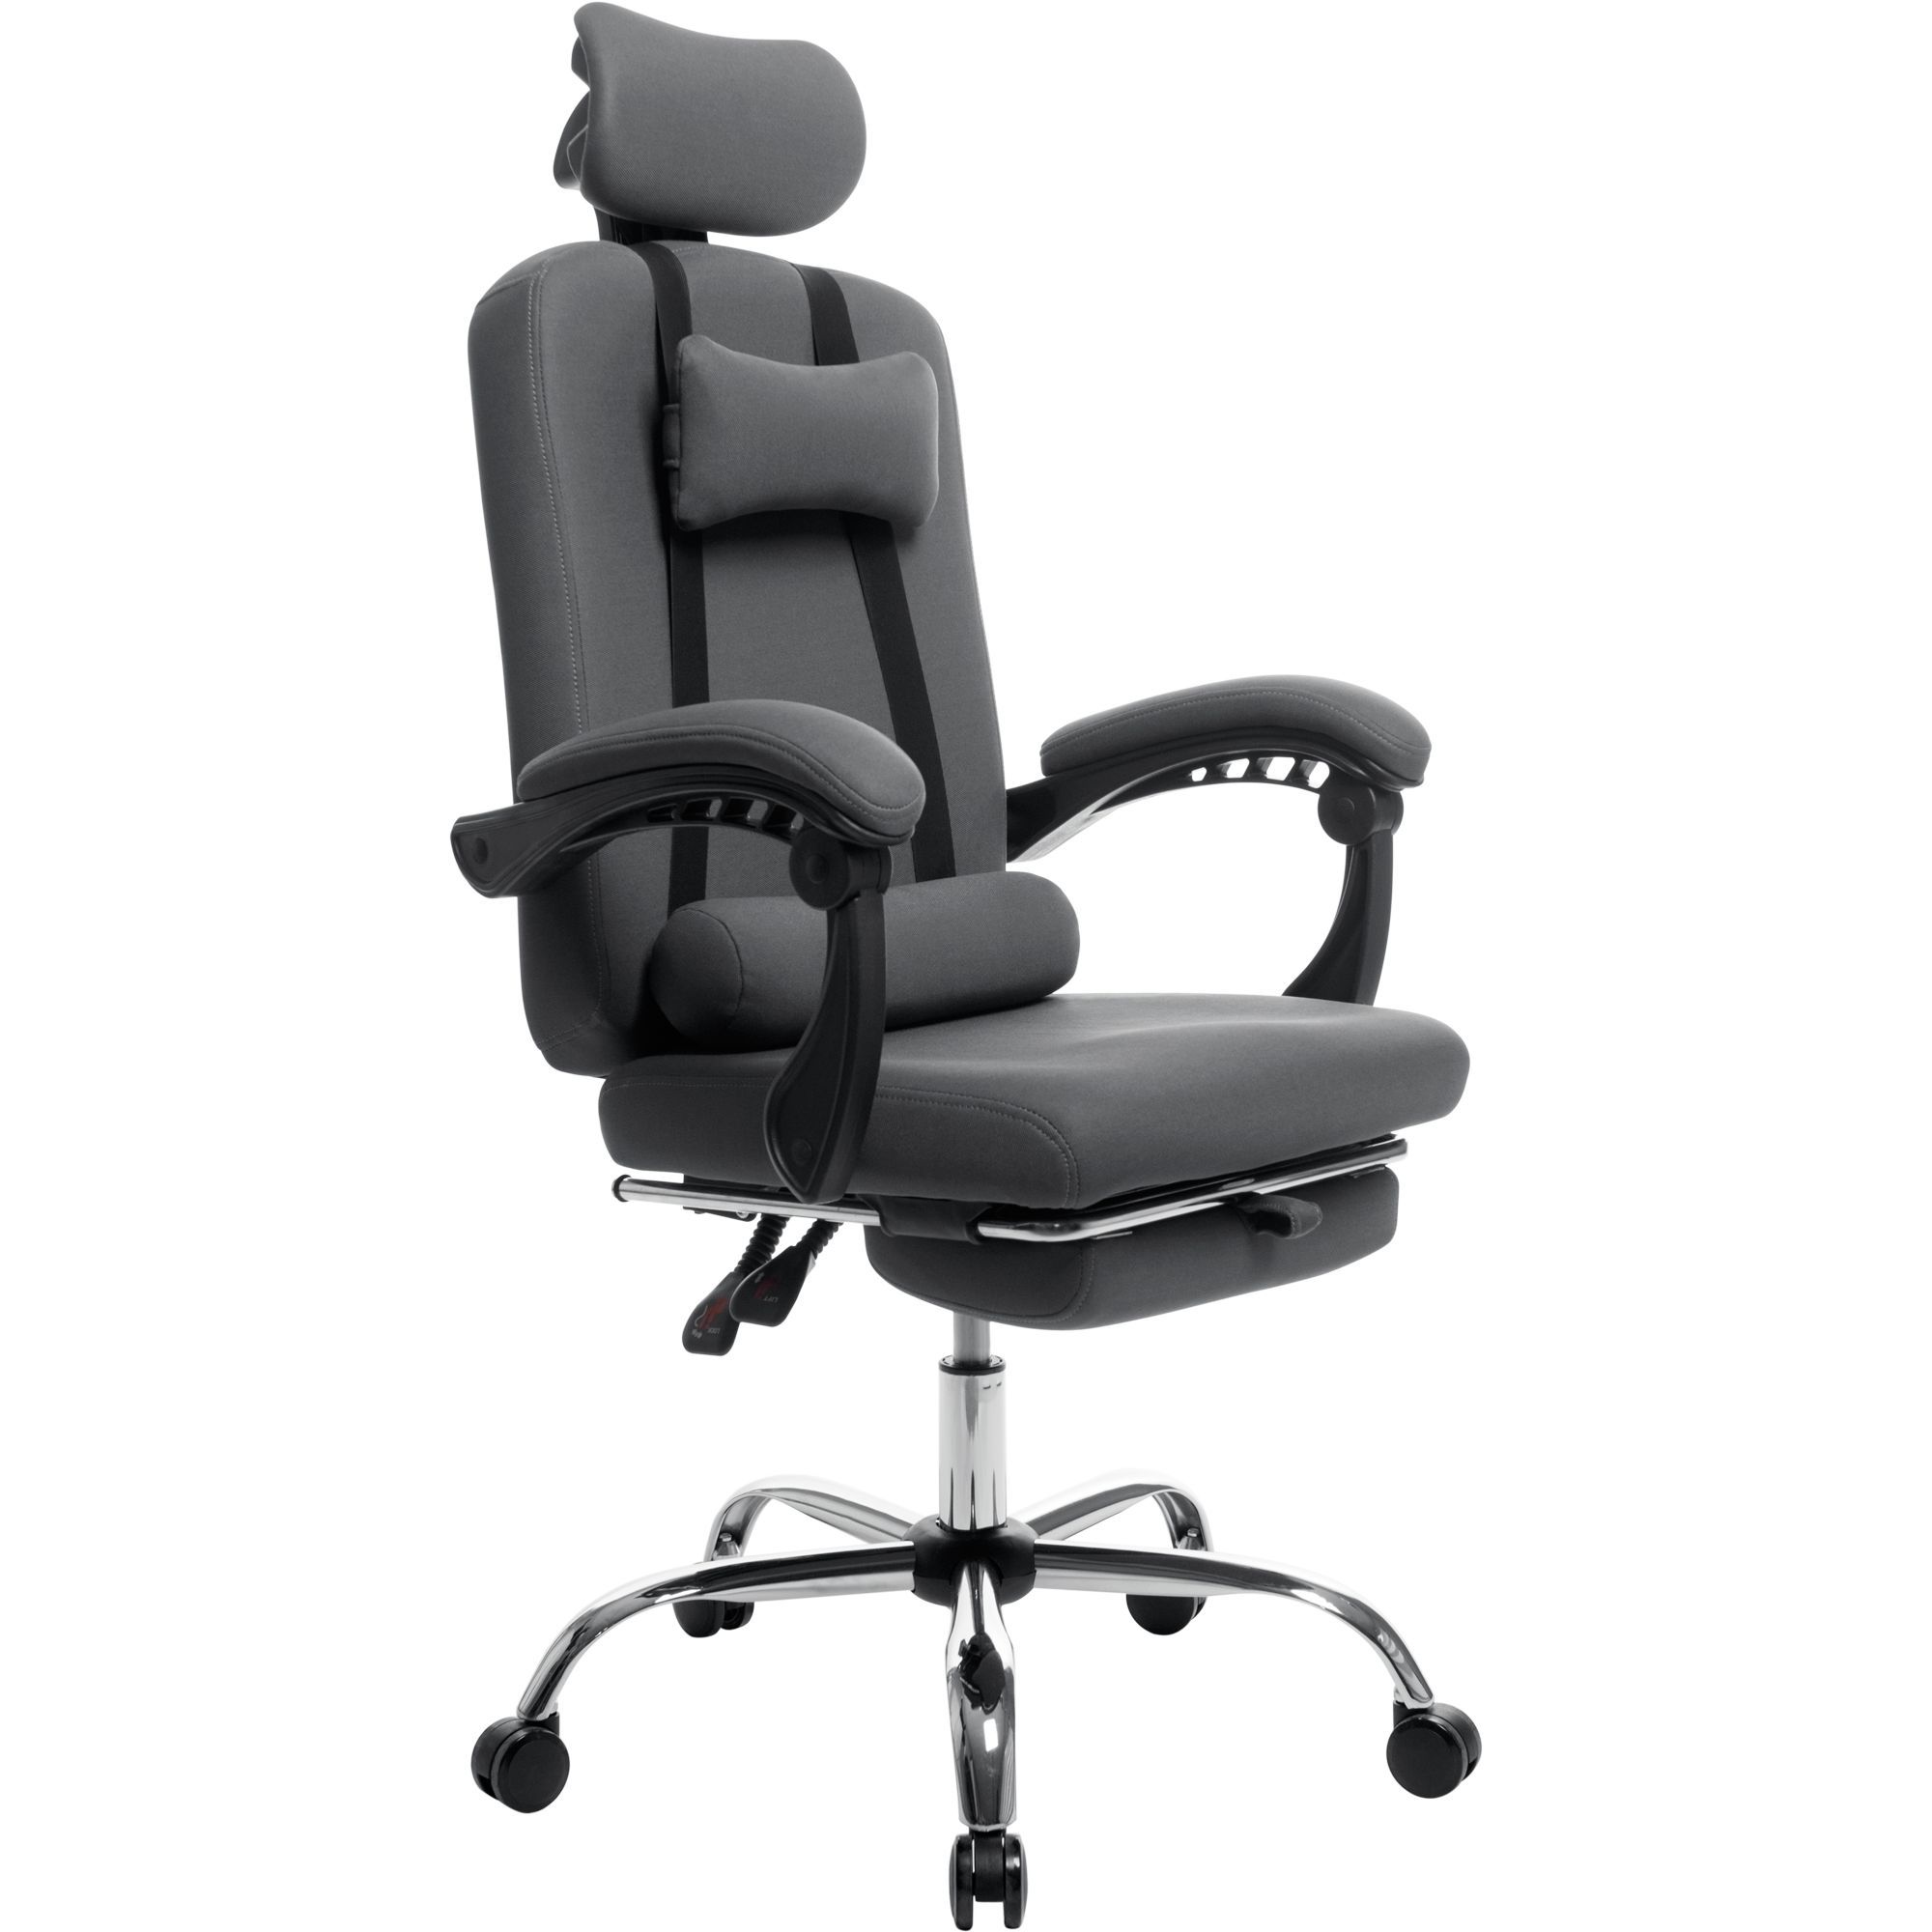 Офисное кресло GT Racer X-8003 Fabric, серое (X-8003 Gray) - фото 1